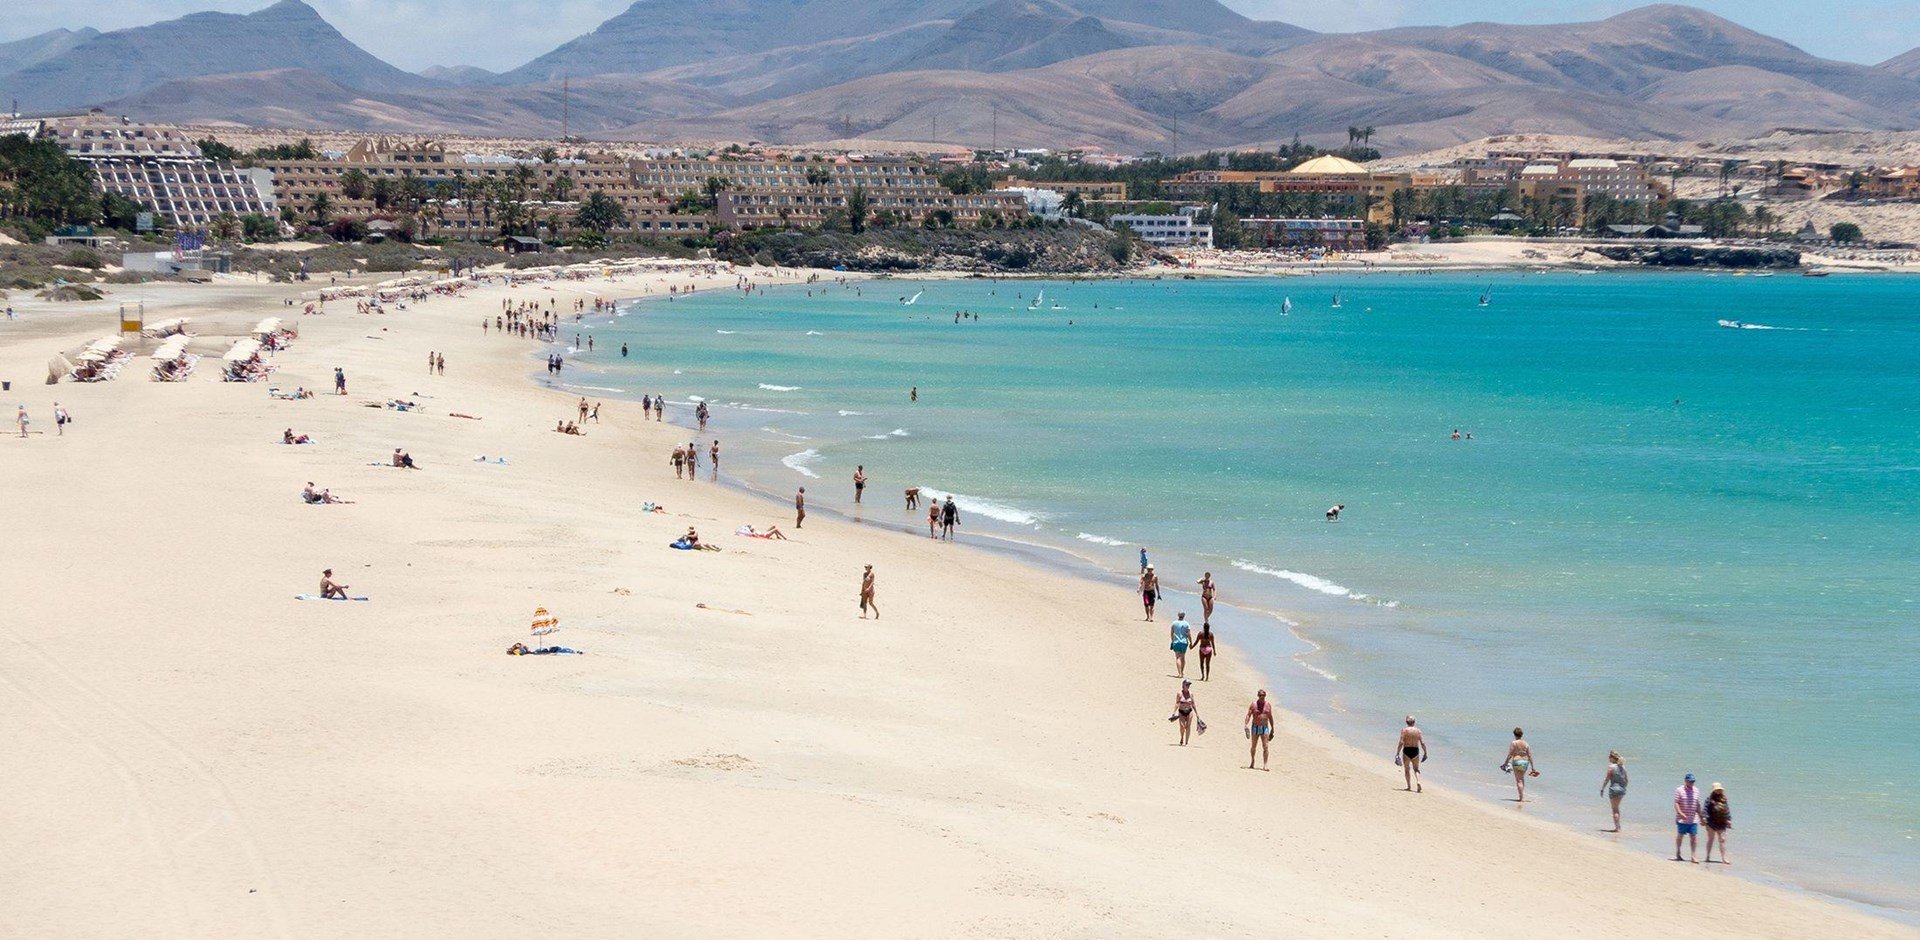 000418-Caleta-de-Fuste-Beach-Fuerteventura-pixabay-676941-Hybris